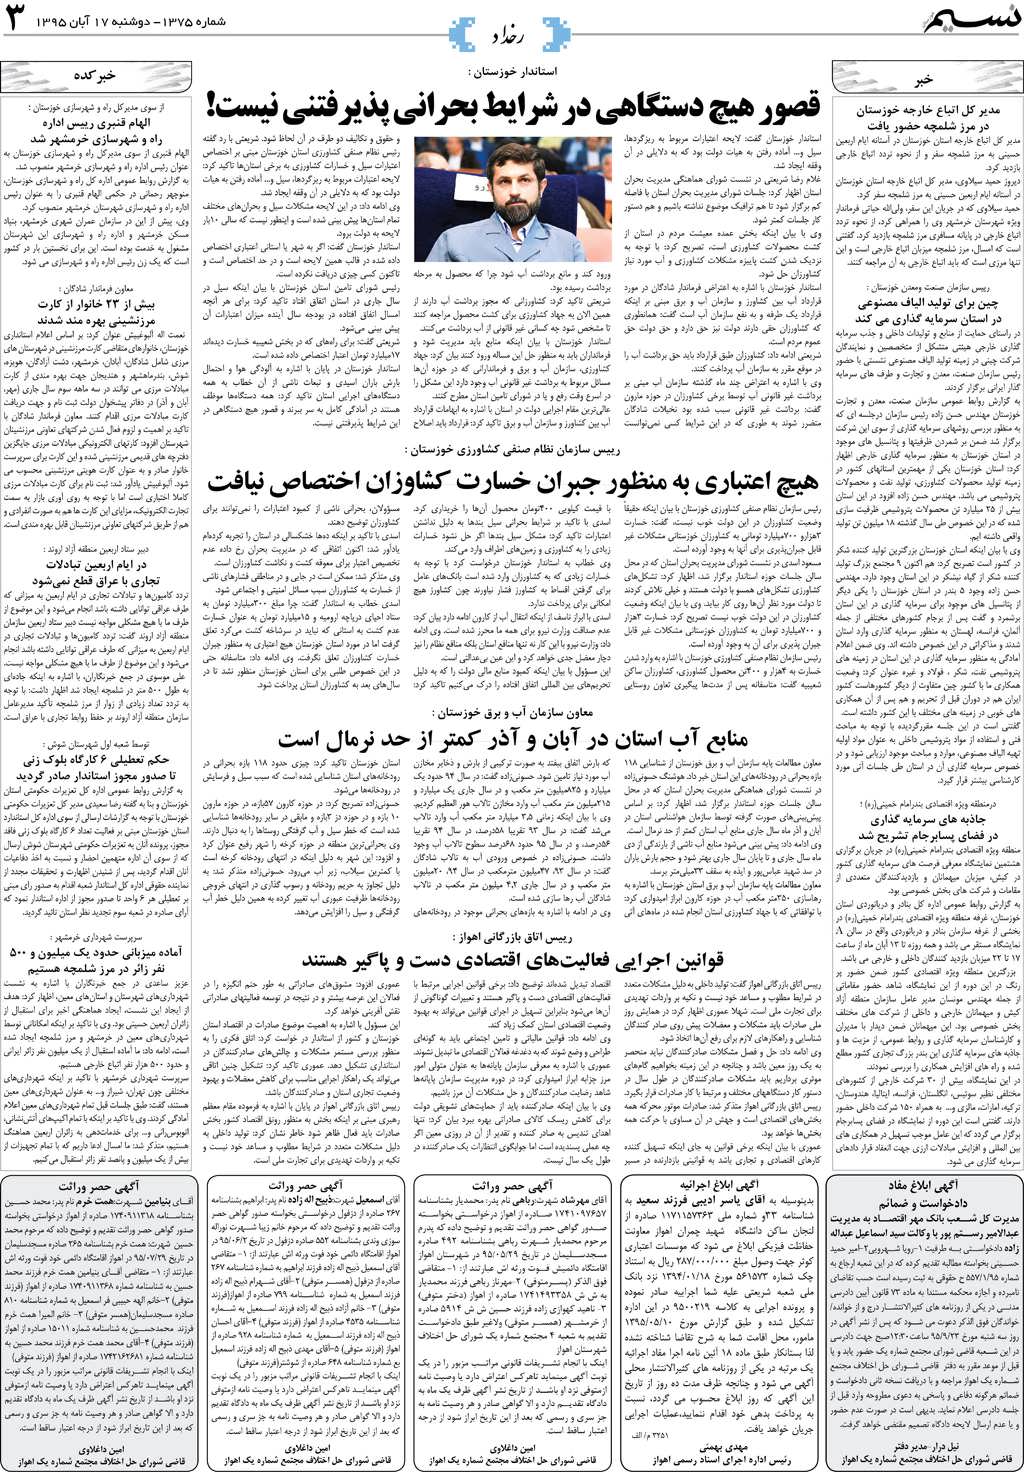 صفحه رخداد روزنامه نسیم شماره 1375